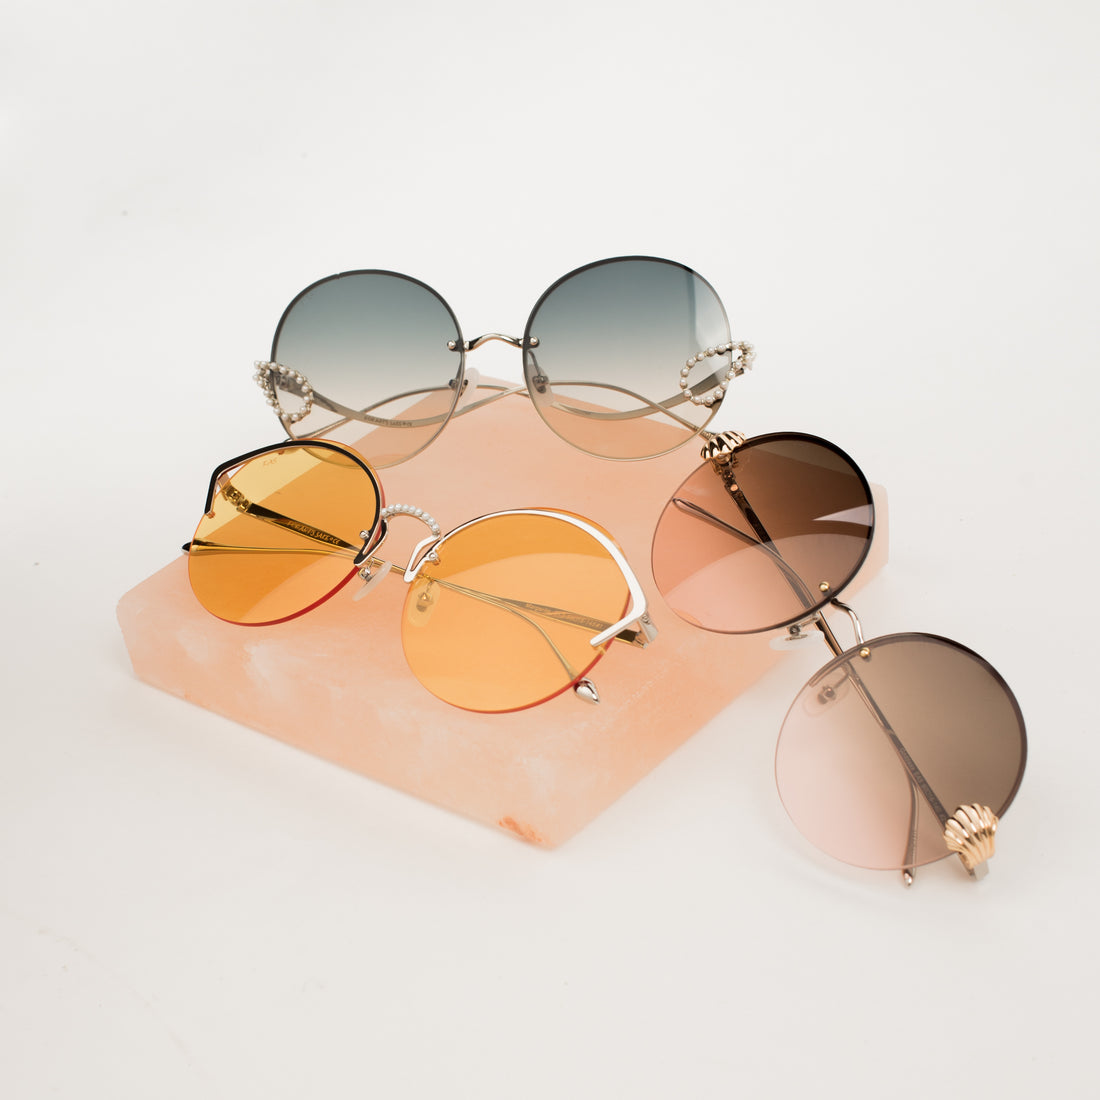 Trending: Pearl Sunglasses